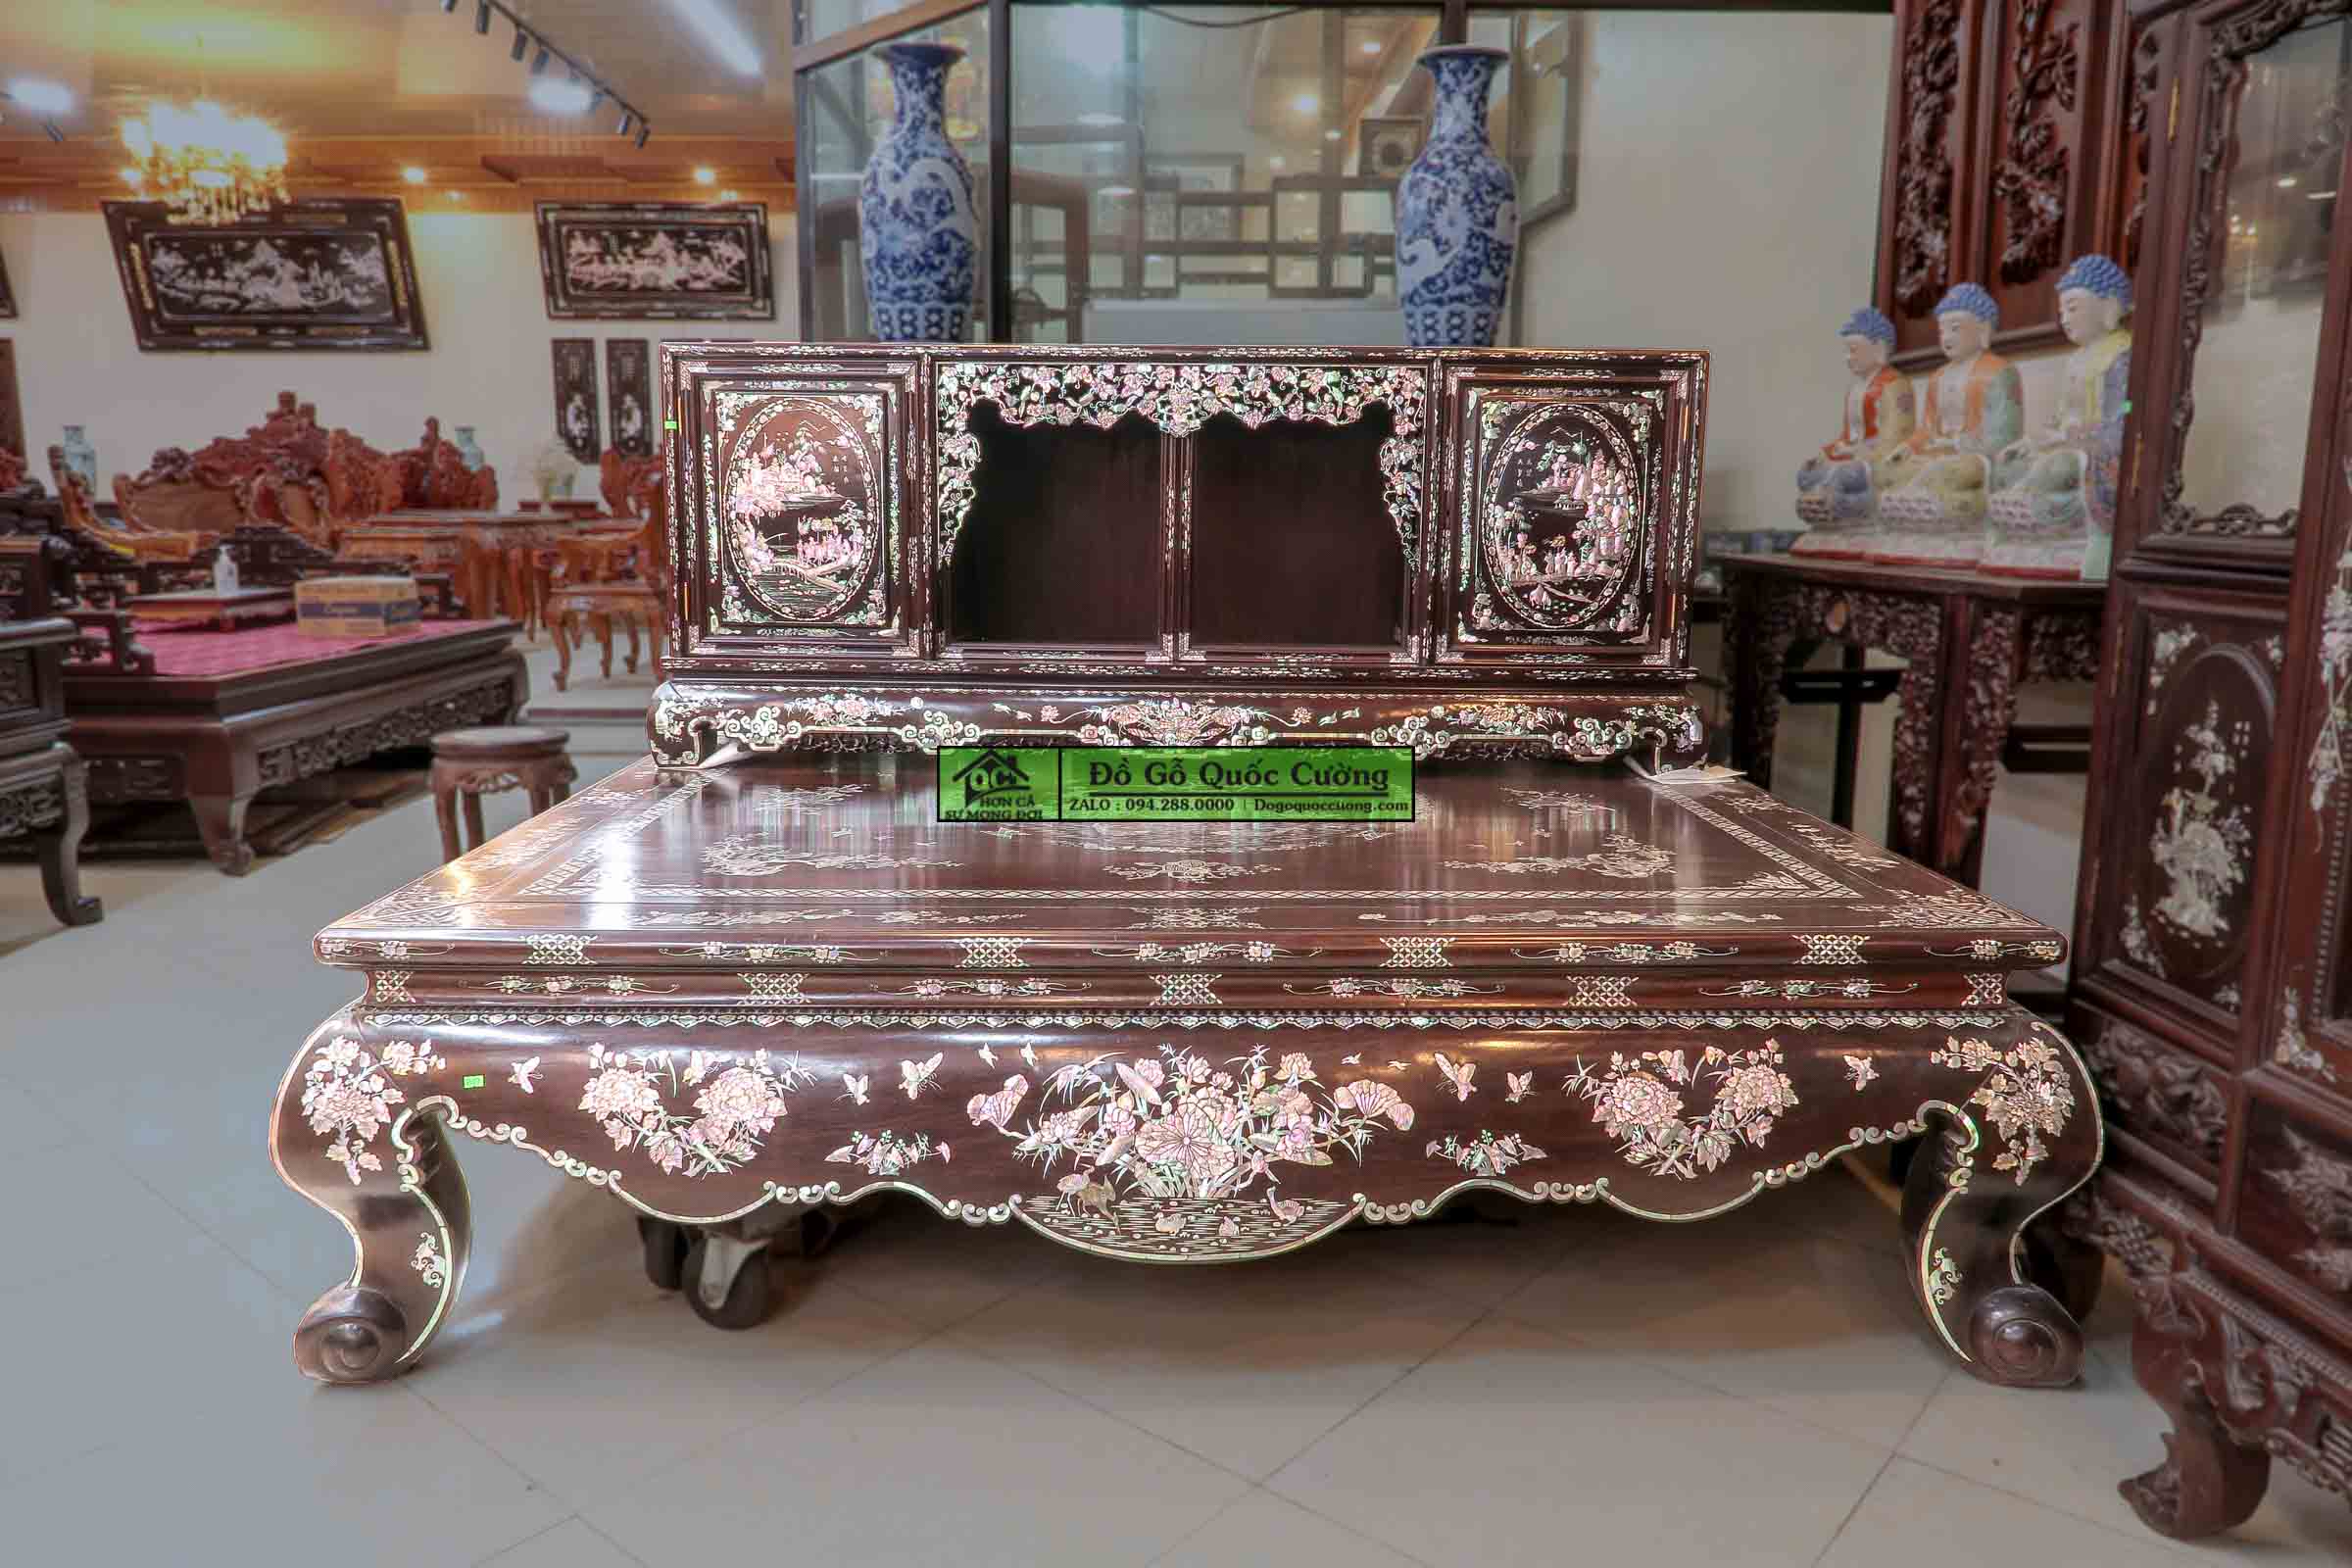 Sập gụ tủ chè gỗ gụ khảm liên chi - Bảo Áp Xuyên Liên - Hàng cao cấp đang được trưng bày tại Dogoquoccuong